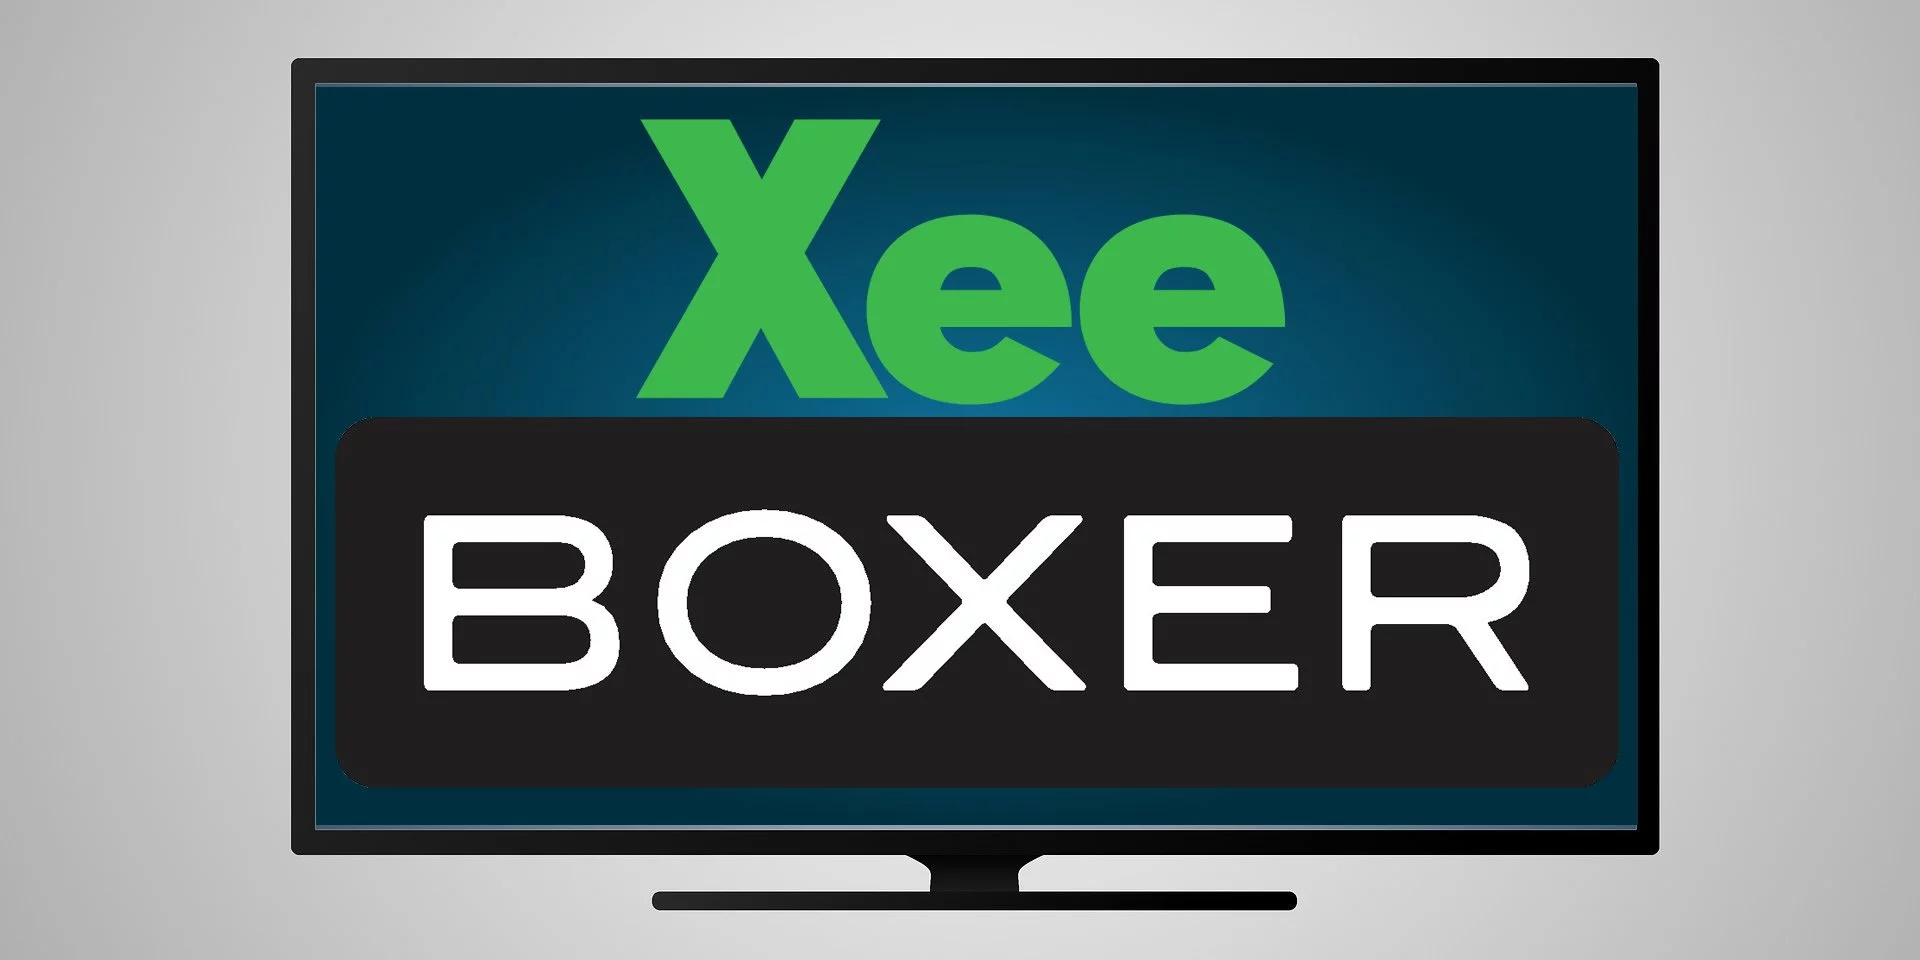 Xee boxer tv